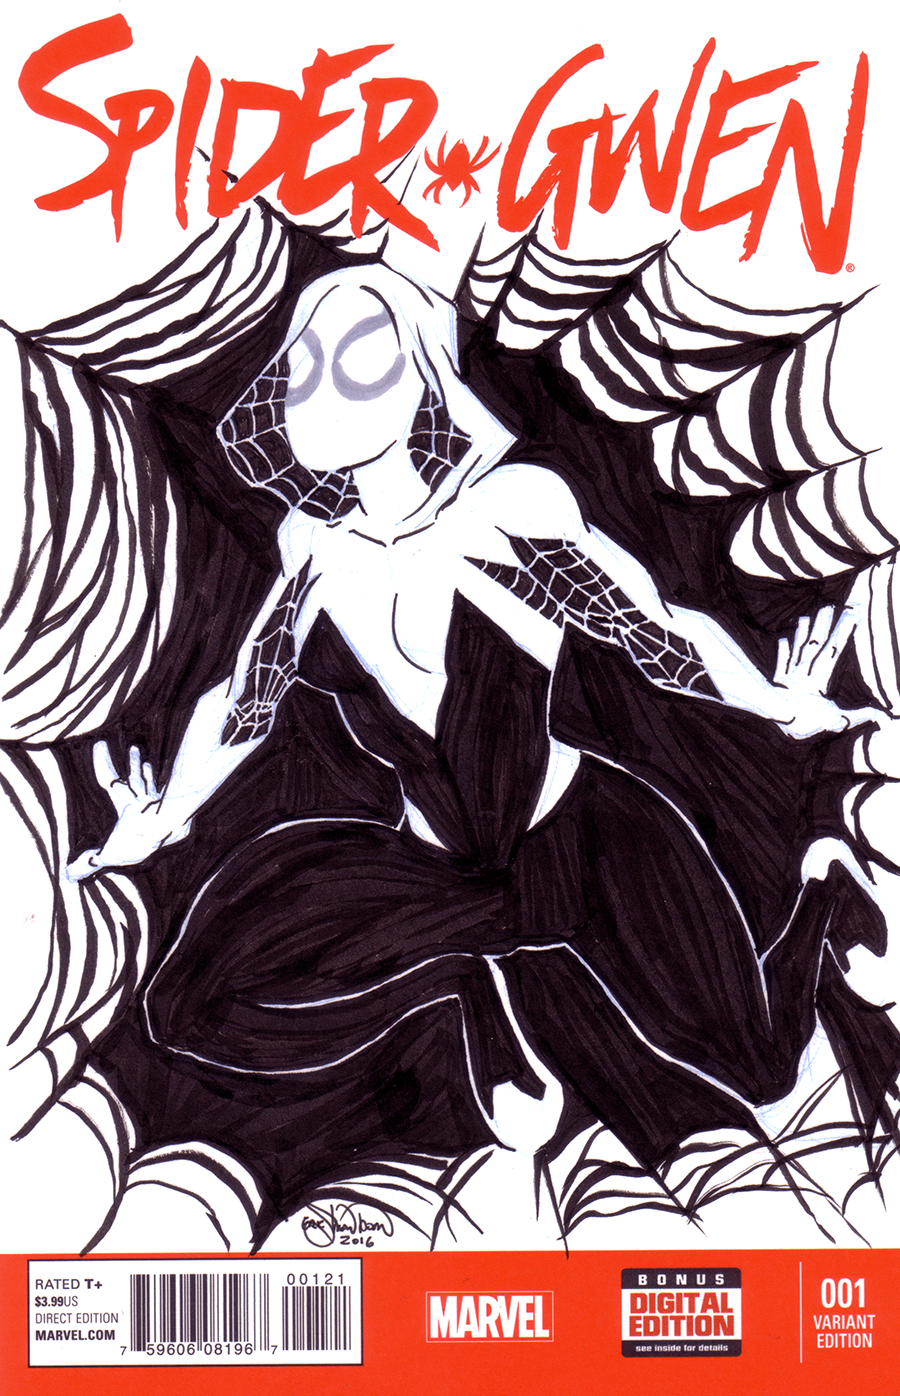 494. Spider-Gwen